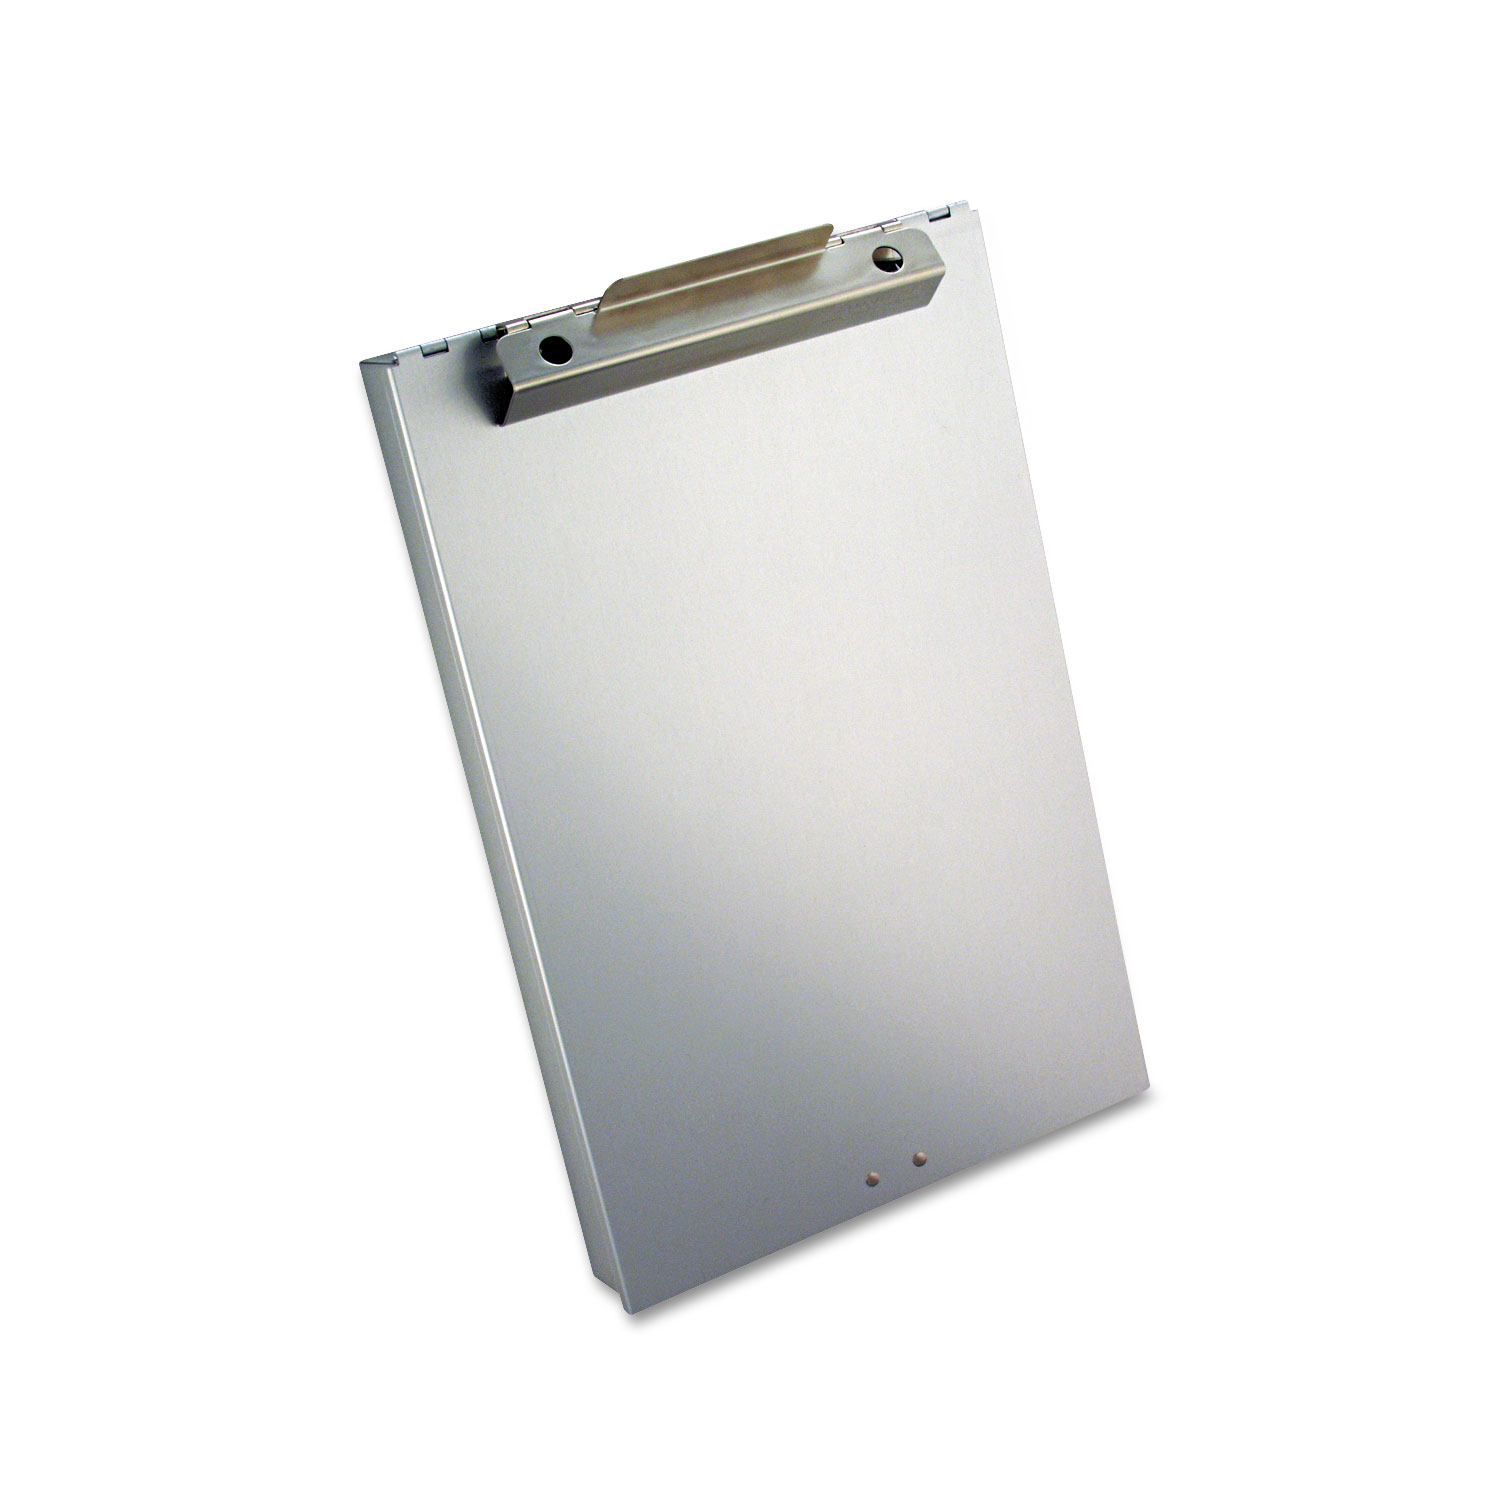 Redi-Rite Aluminum Storage Clipboard, 1 Clip Cap, 8 1/2 x 12 Sheets, Silver